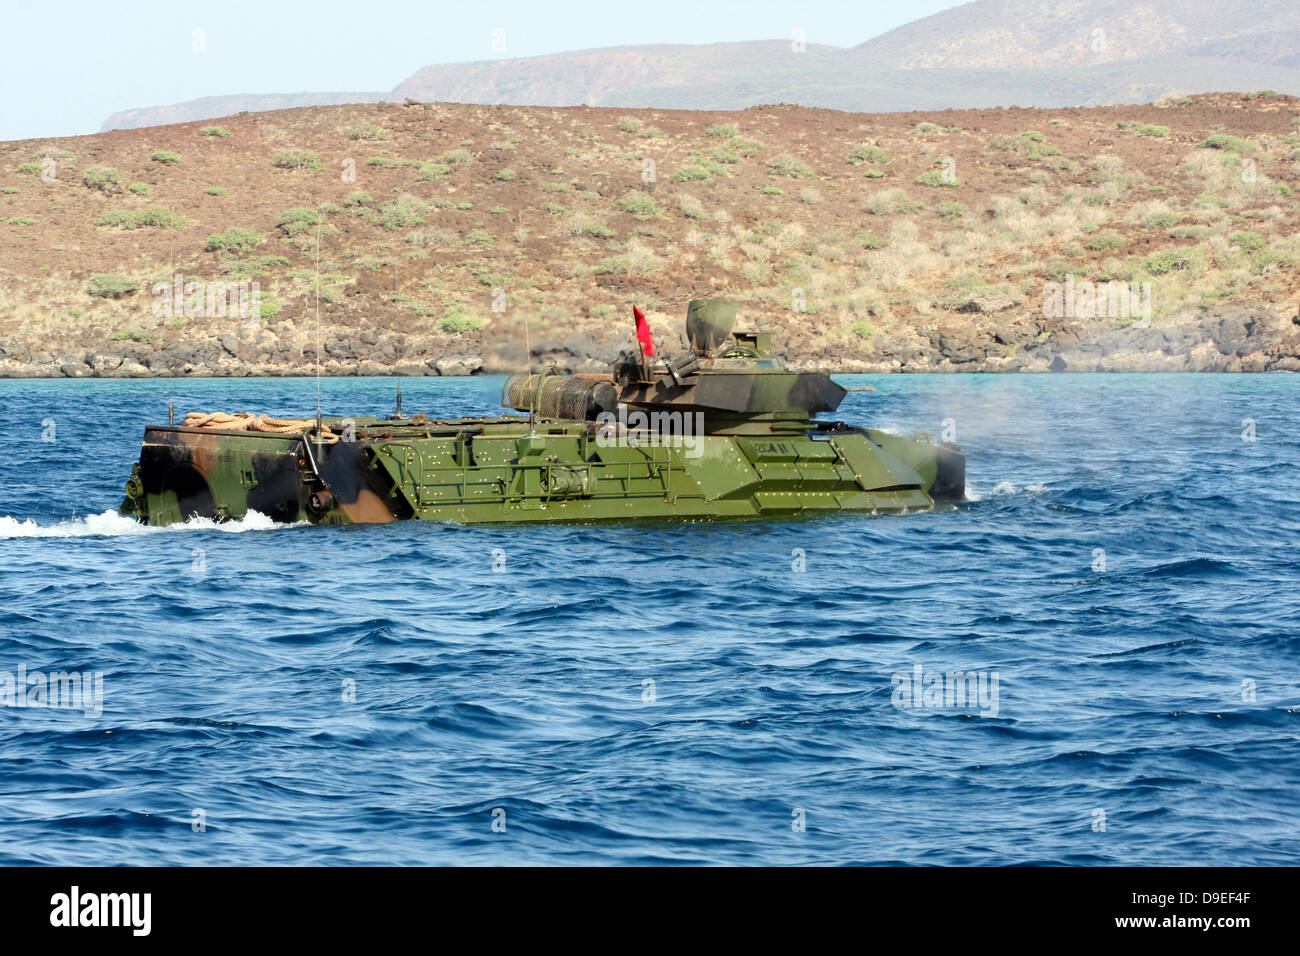 Amphibious assault vehicle crewmen conduct a water gunnery range at a Djibouti beach. Stock Photo